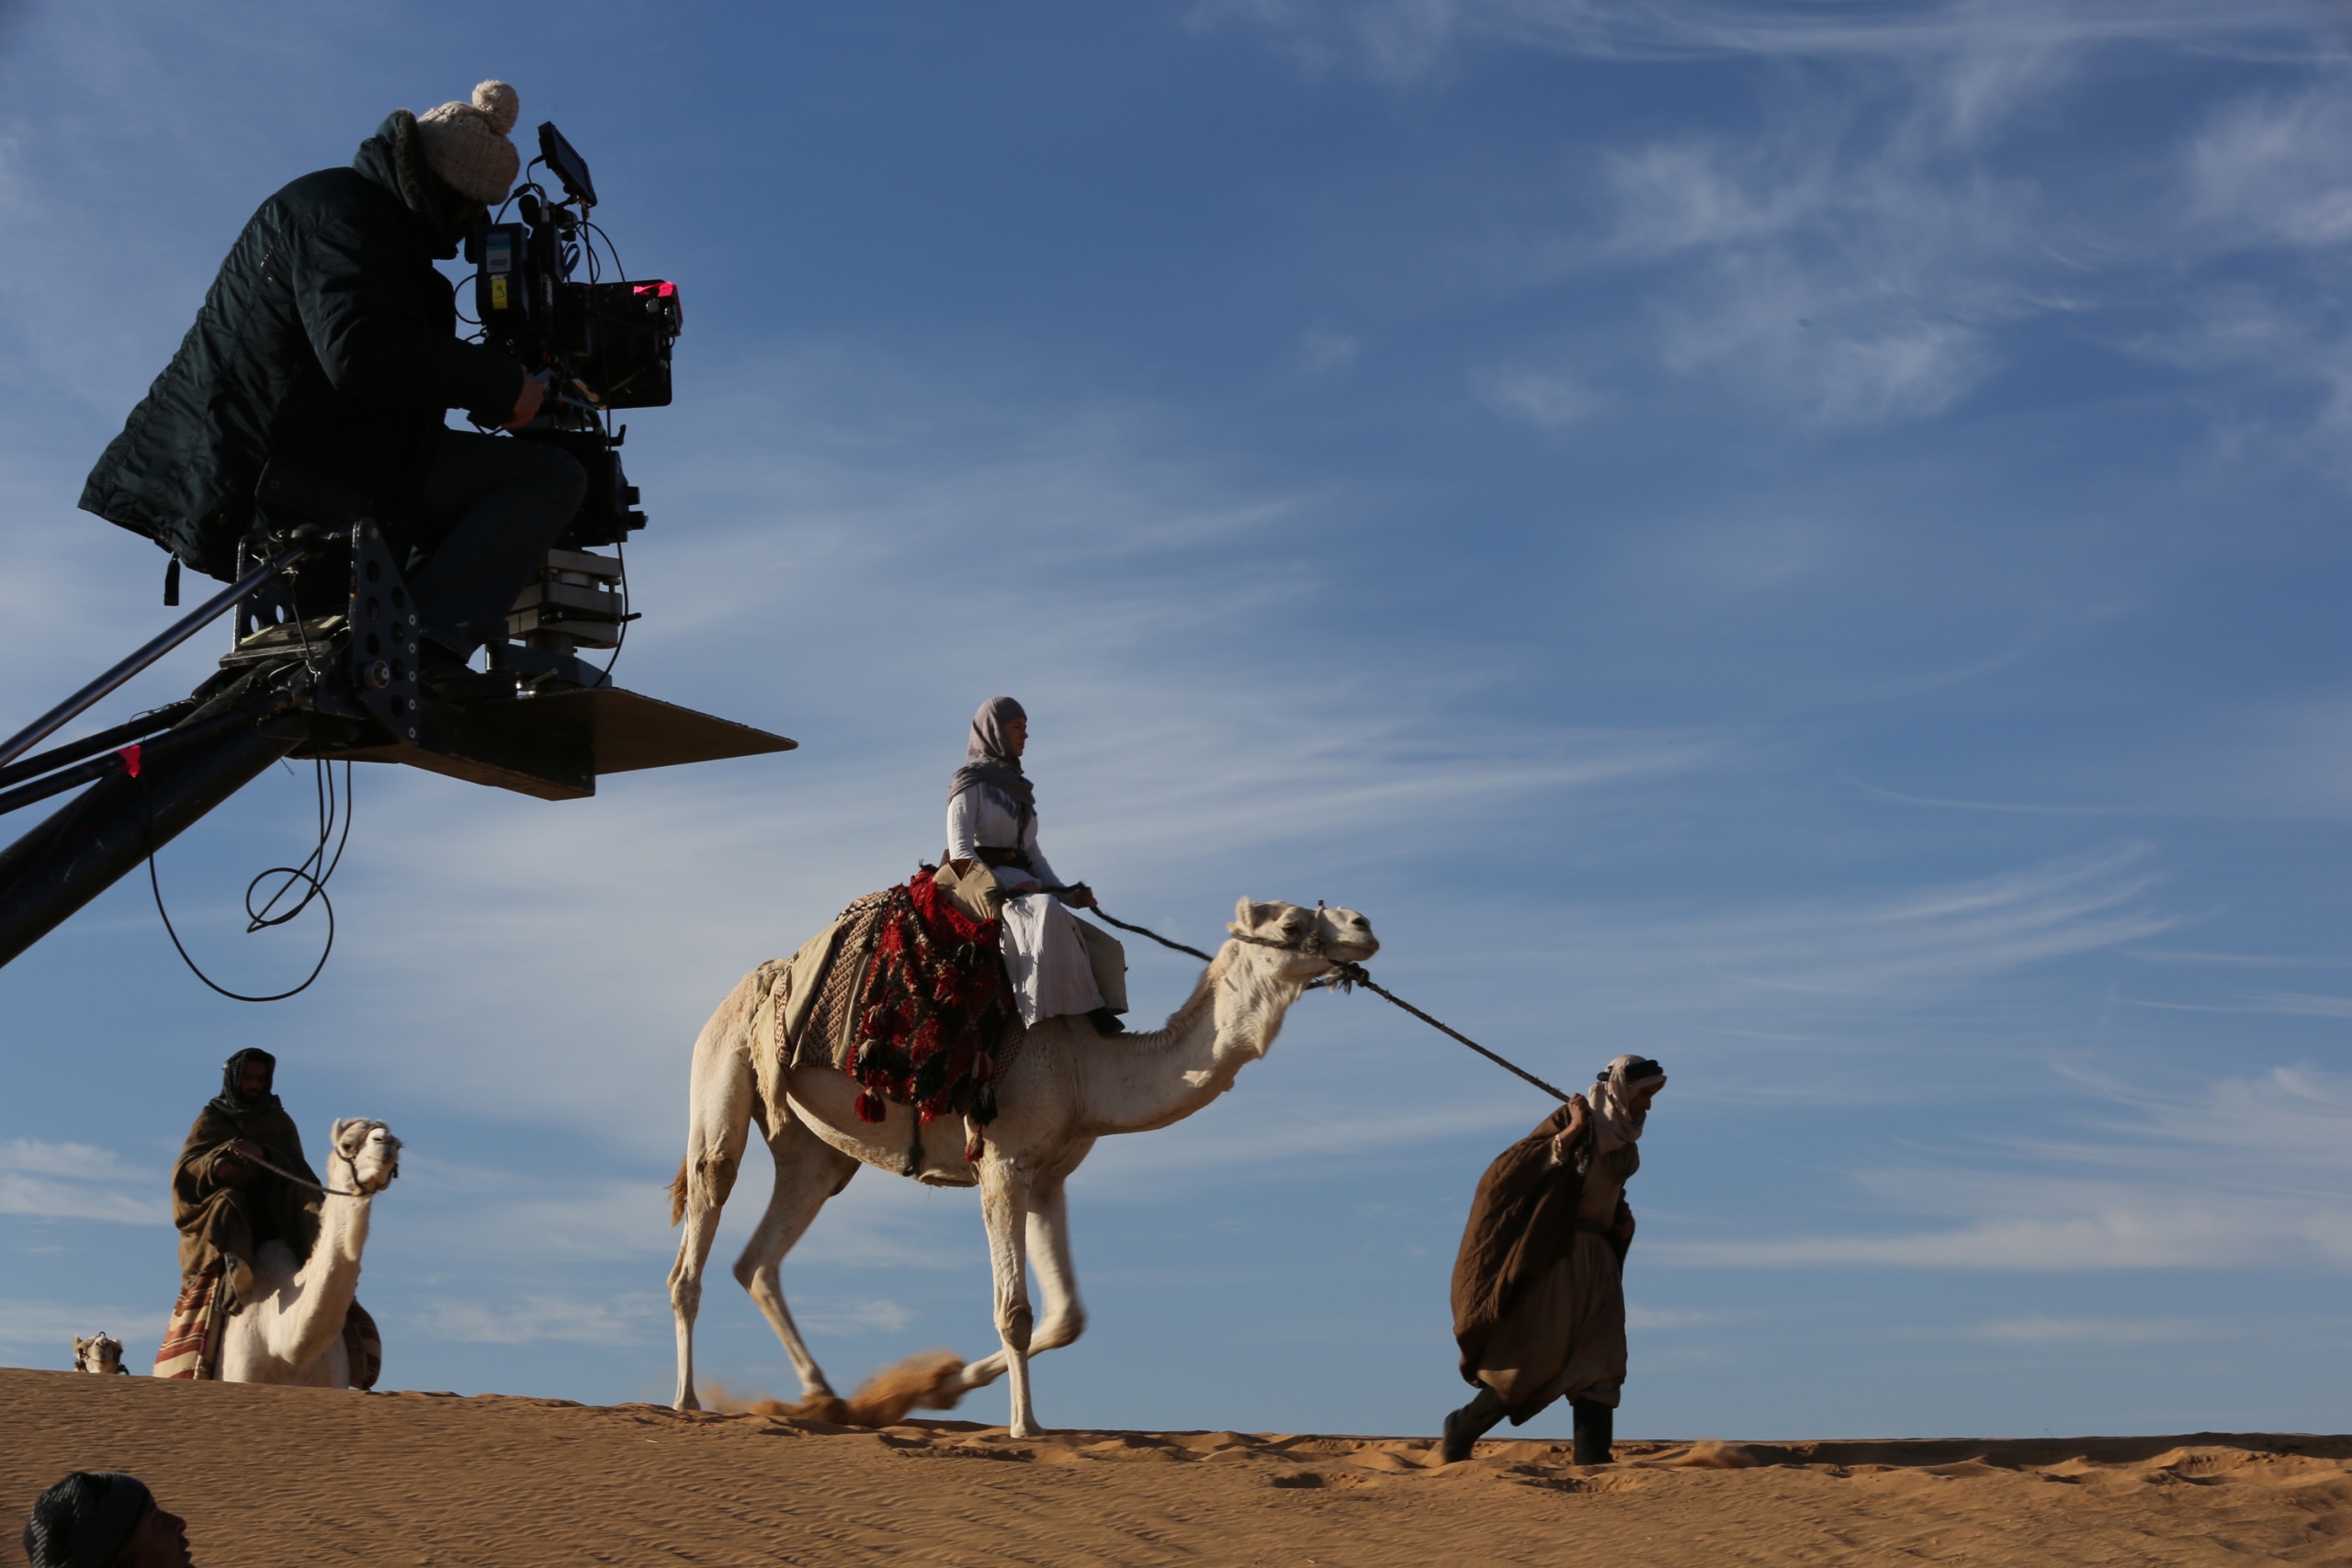 Vor blauem Himmel in der Wüste wird eine Frau auf einem Kamel geführt. Hinter ihr reitet noch jemand. Links im Vordergrund sitzt ein Mann auf einem Kamerakran und filmt die beschriebene Szene.